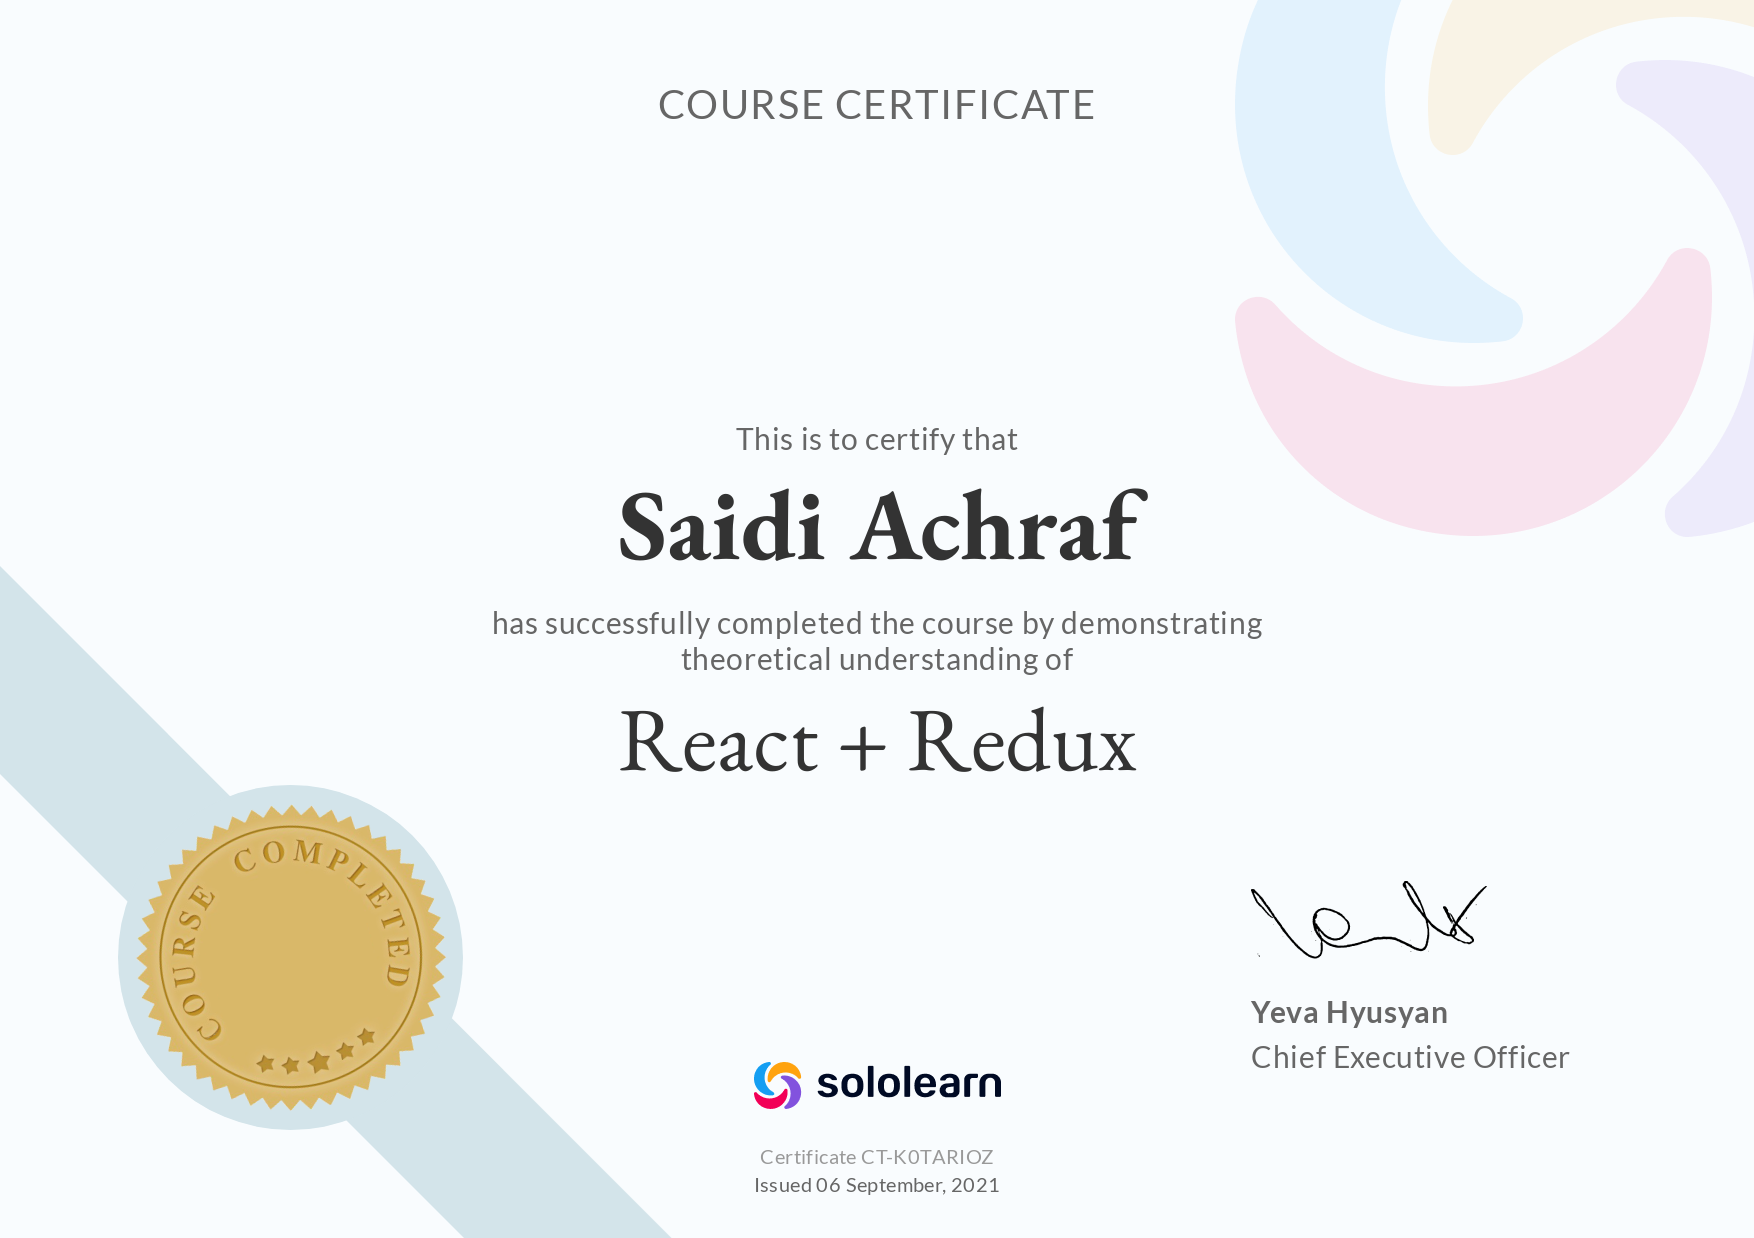 solo learn certification react+redux